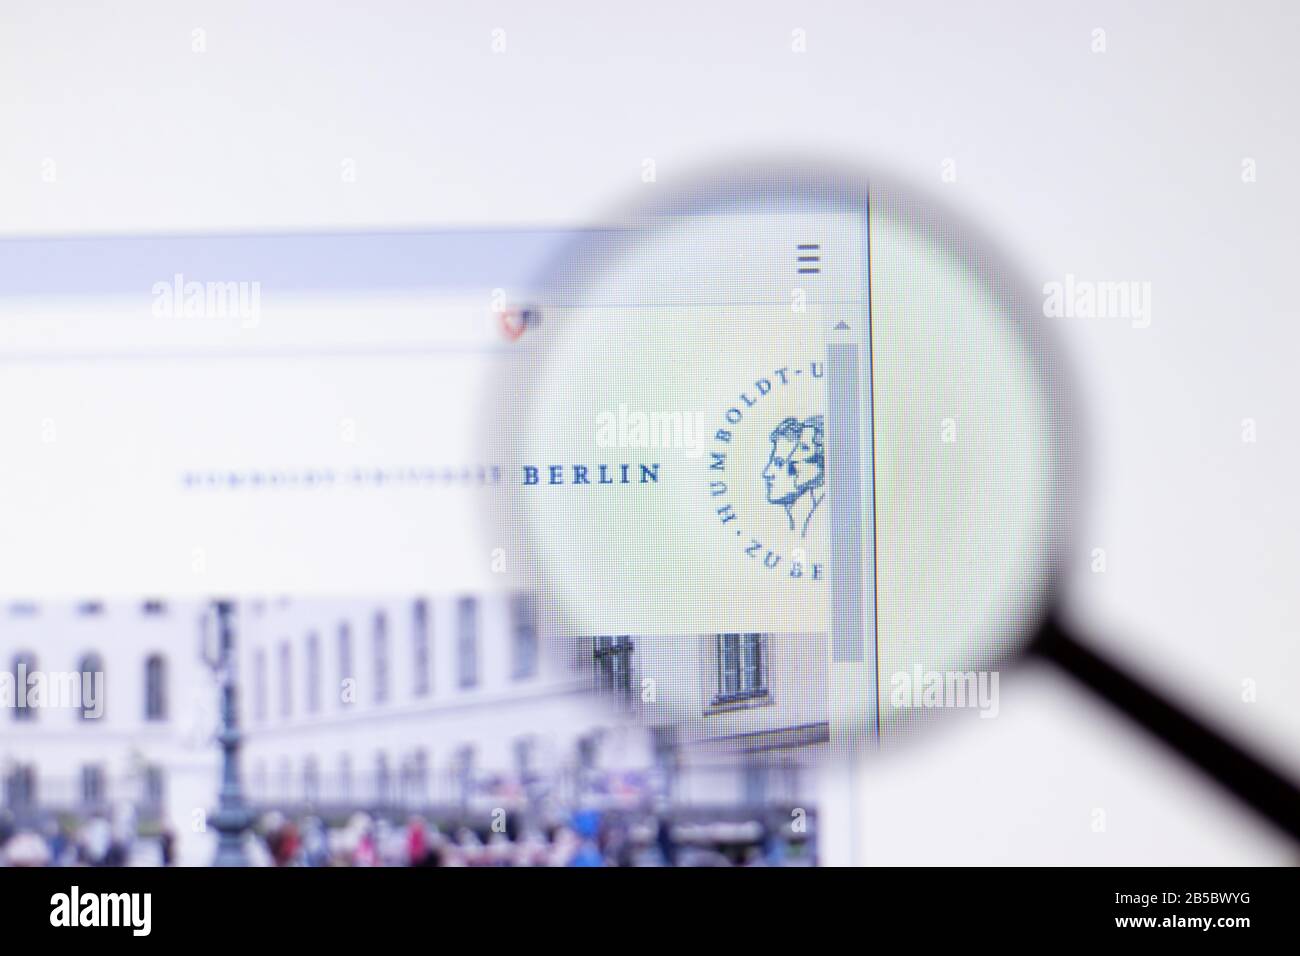 Los Angeles, Kalifornien, USA - 7. März 2020: Die Humbold-Universitat zu Berlin Website Homepage Logo wird in der Nahaufnahme, Illustrative Editorial, angezeigt Stockfoto